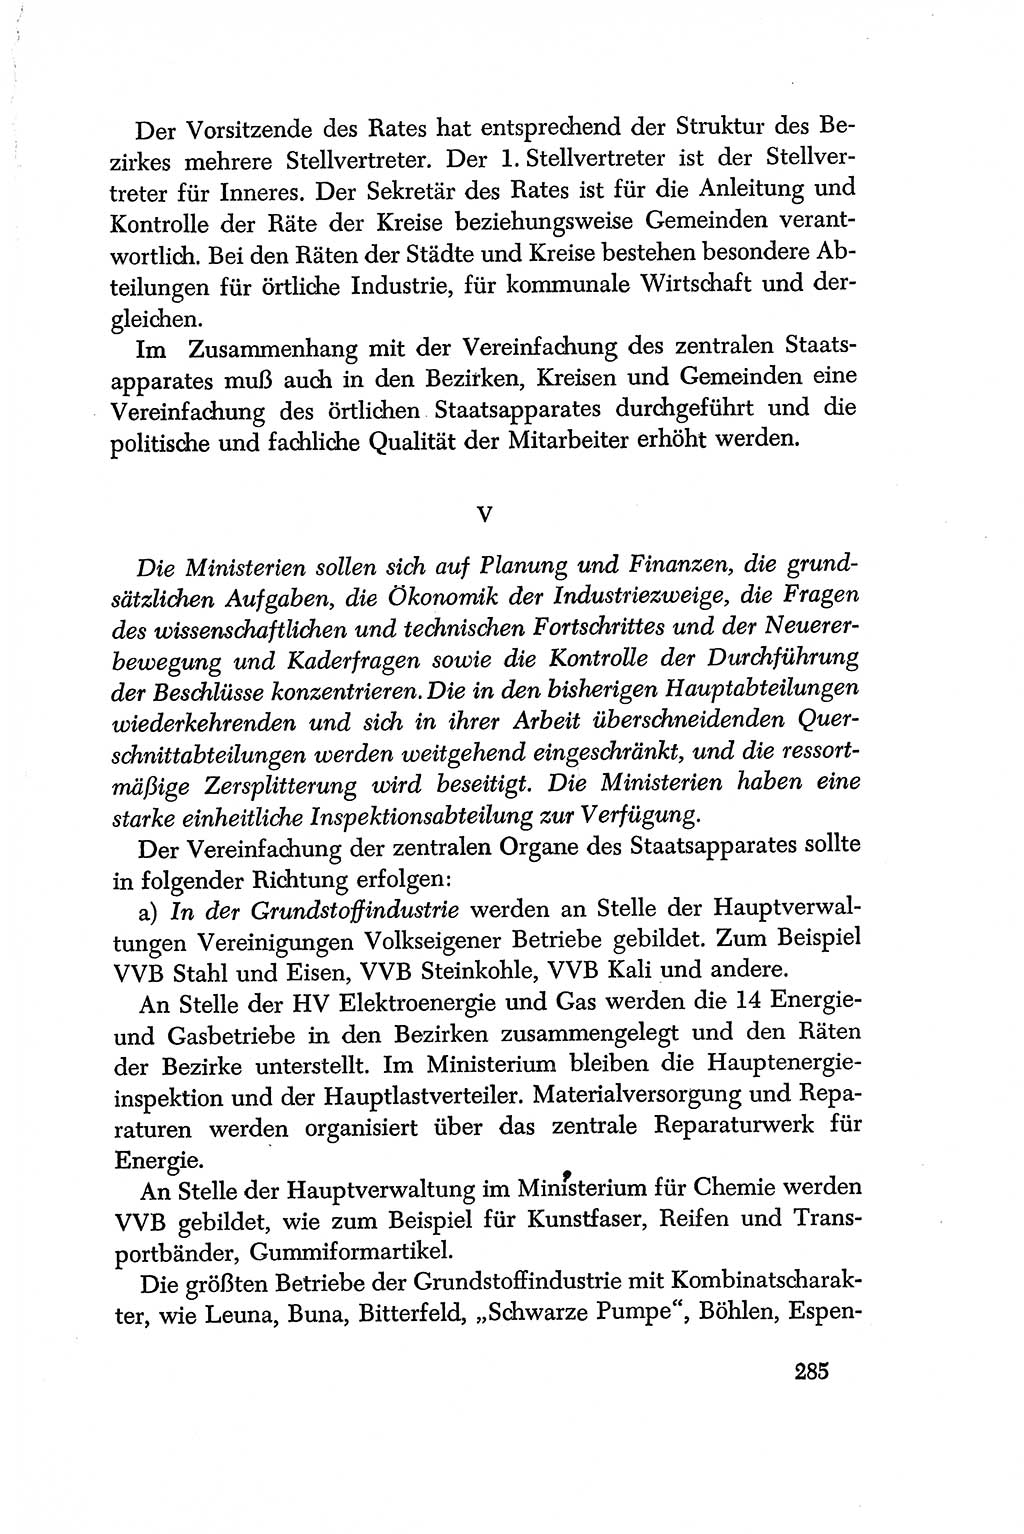 Dokumente der Sozialistischen Einheitspartei Deutschlands (SED) [Deutsche Demokratische Republik (DDR)] 1956-1957, Seite 285 (Dok. SED DDR 1956-1957, S. 285)